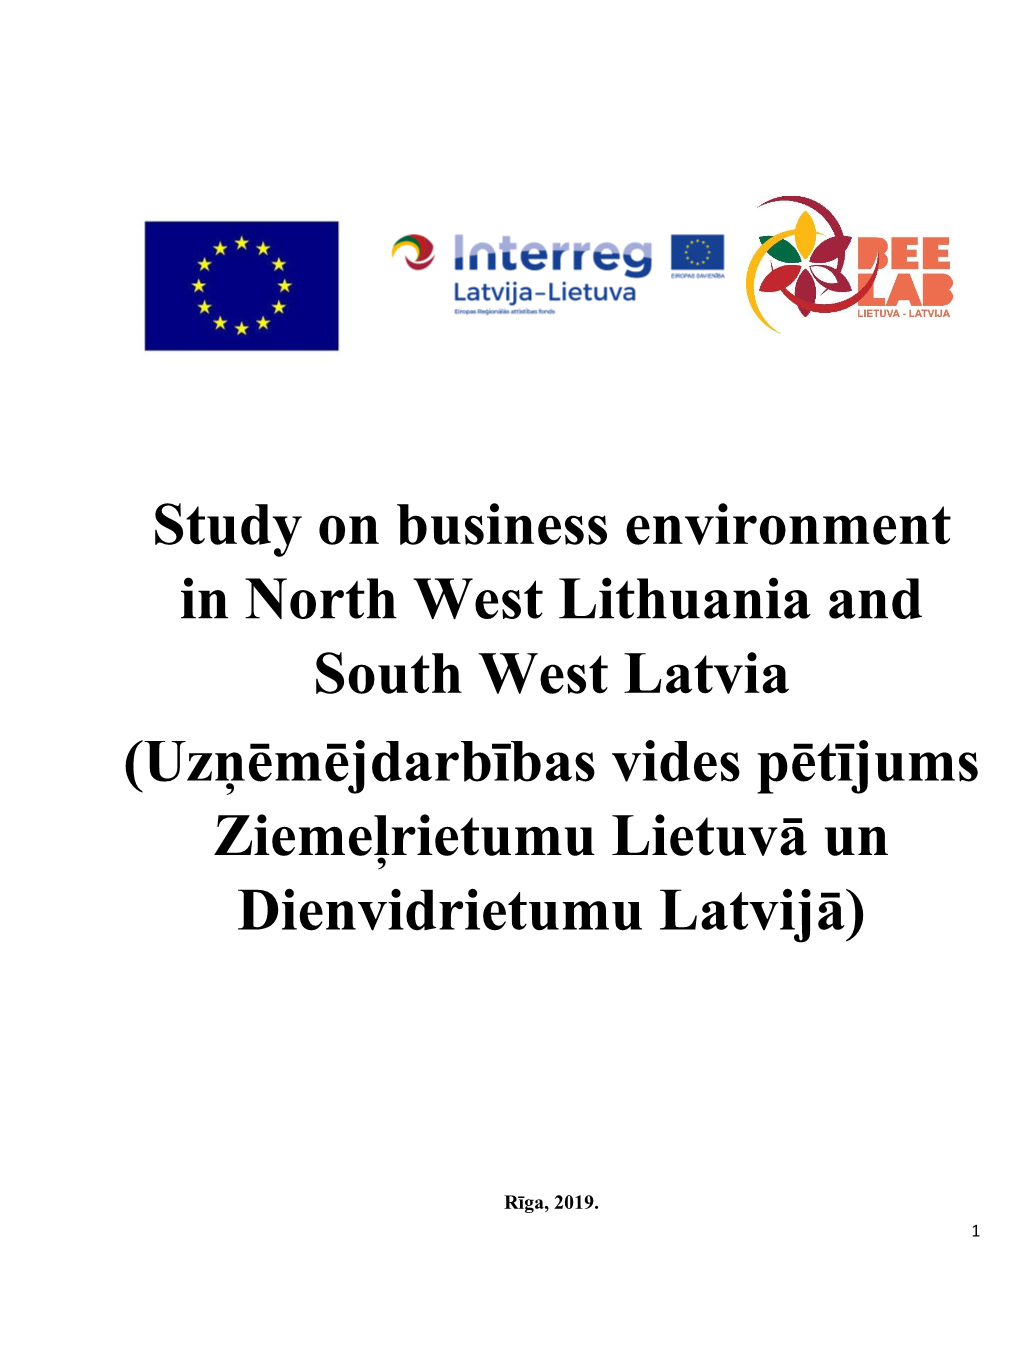 Study on Business Environment in North West Lithuania and South West Latvia (Uzņēmējdarbības Vides Pētījums Ziemeļrietumu Lietuvā Un Dienvidrietumu Latvijā)